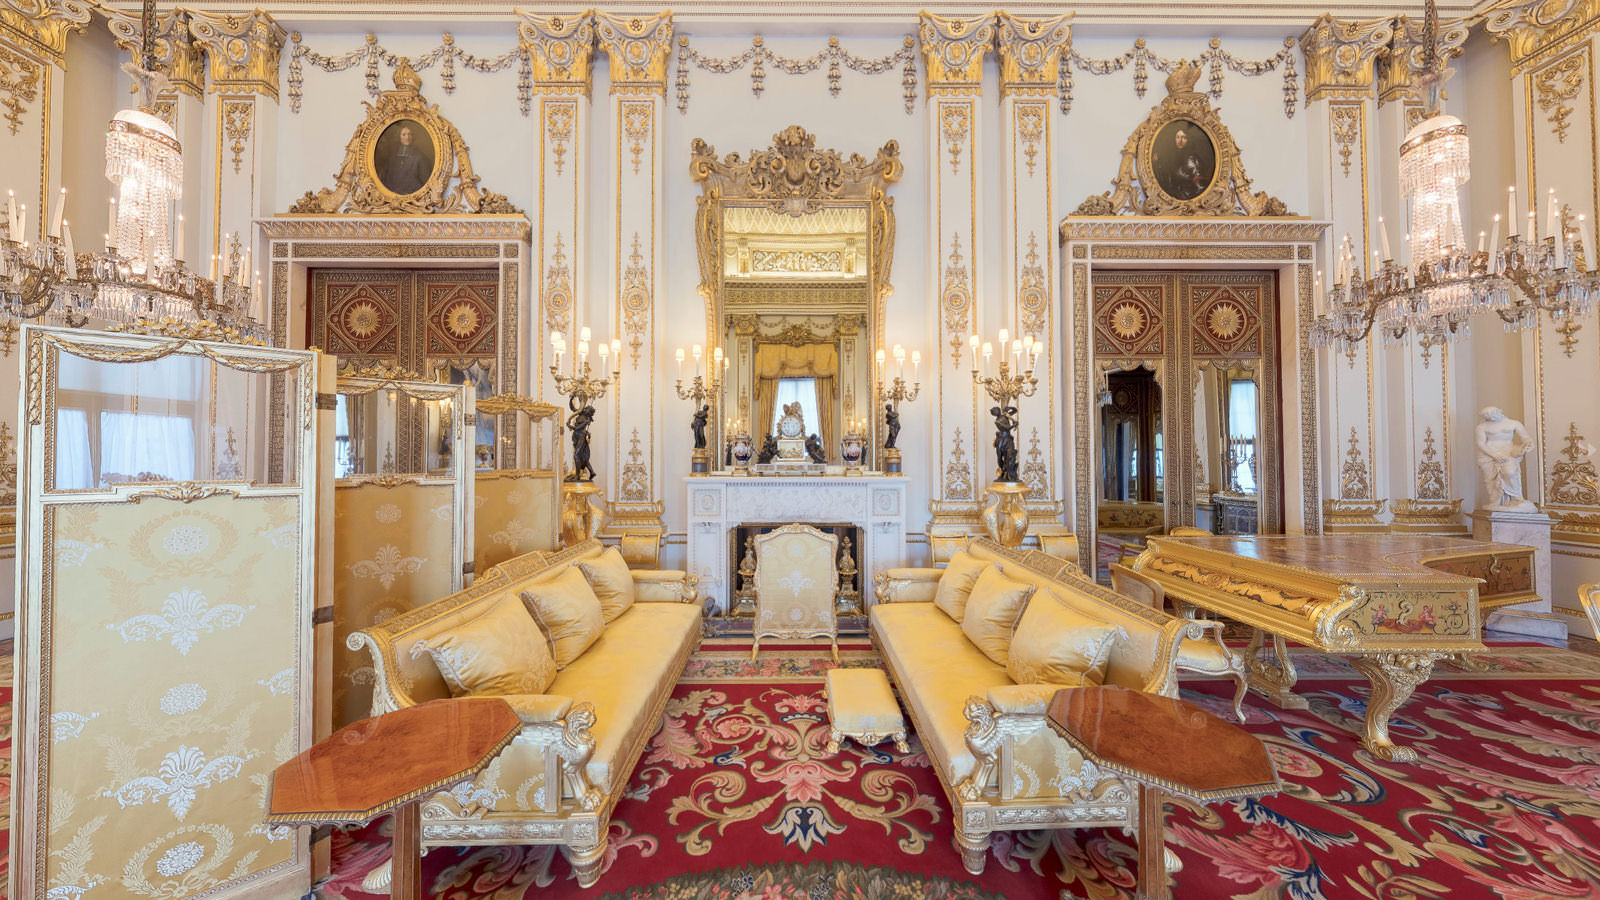 Royal Palace 360 Tours | Buckingham Palace | Windsor Castle | 360 VR